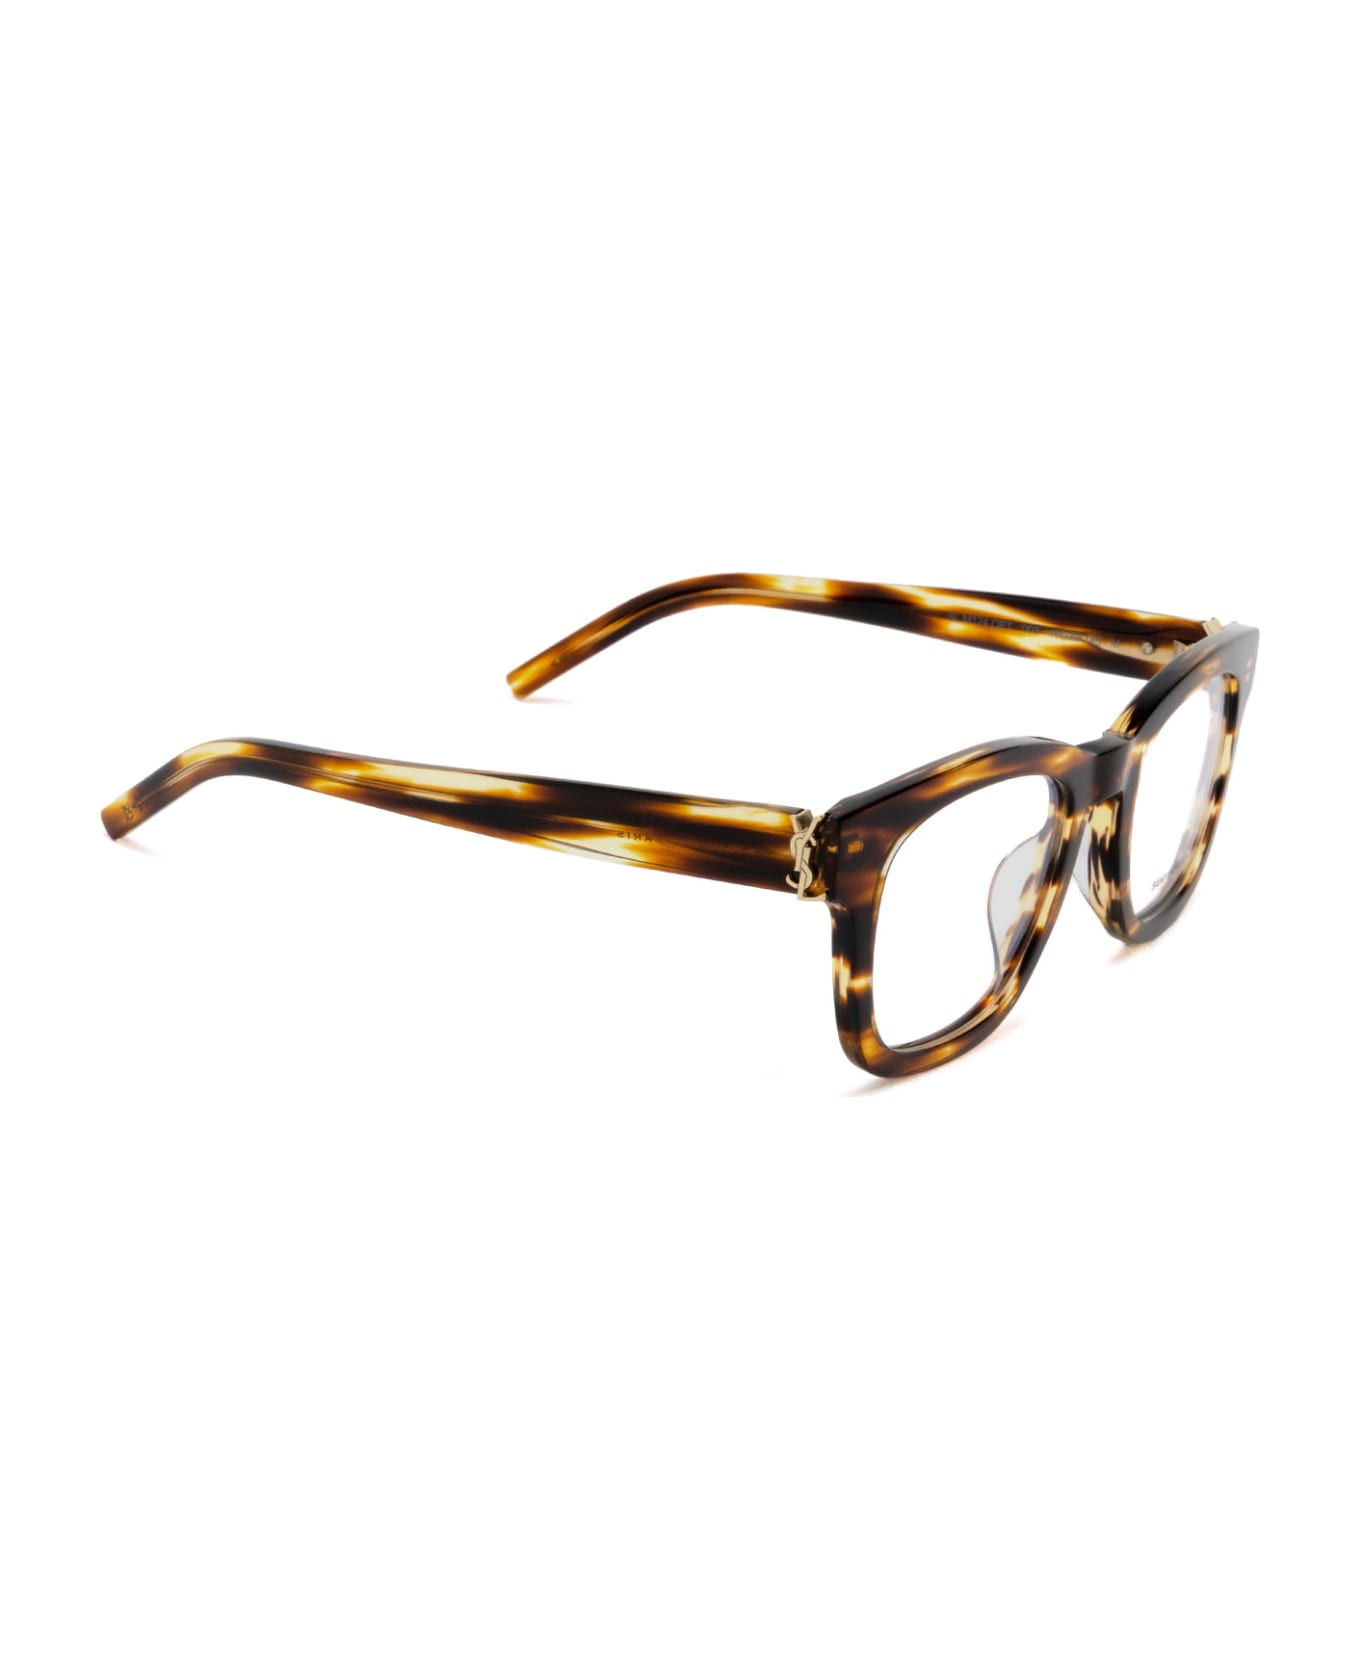 Saint Laurent Eyewear Sl M124 Opt Havana Glasses - Havana アイウェア